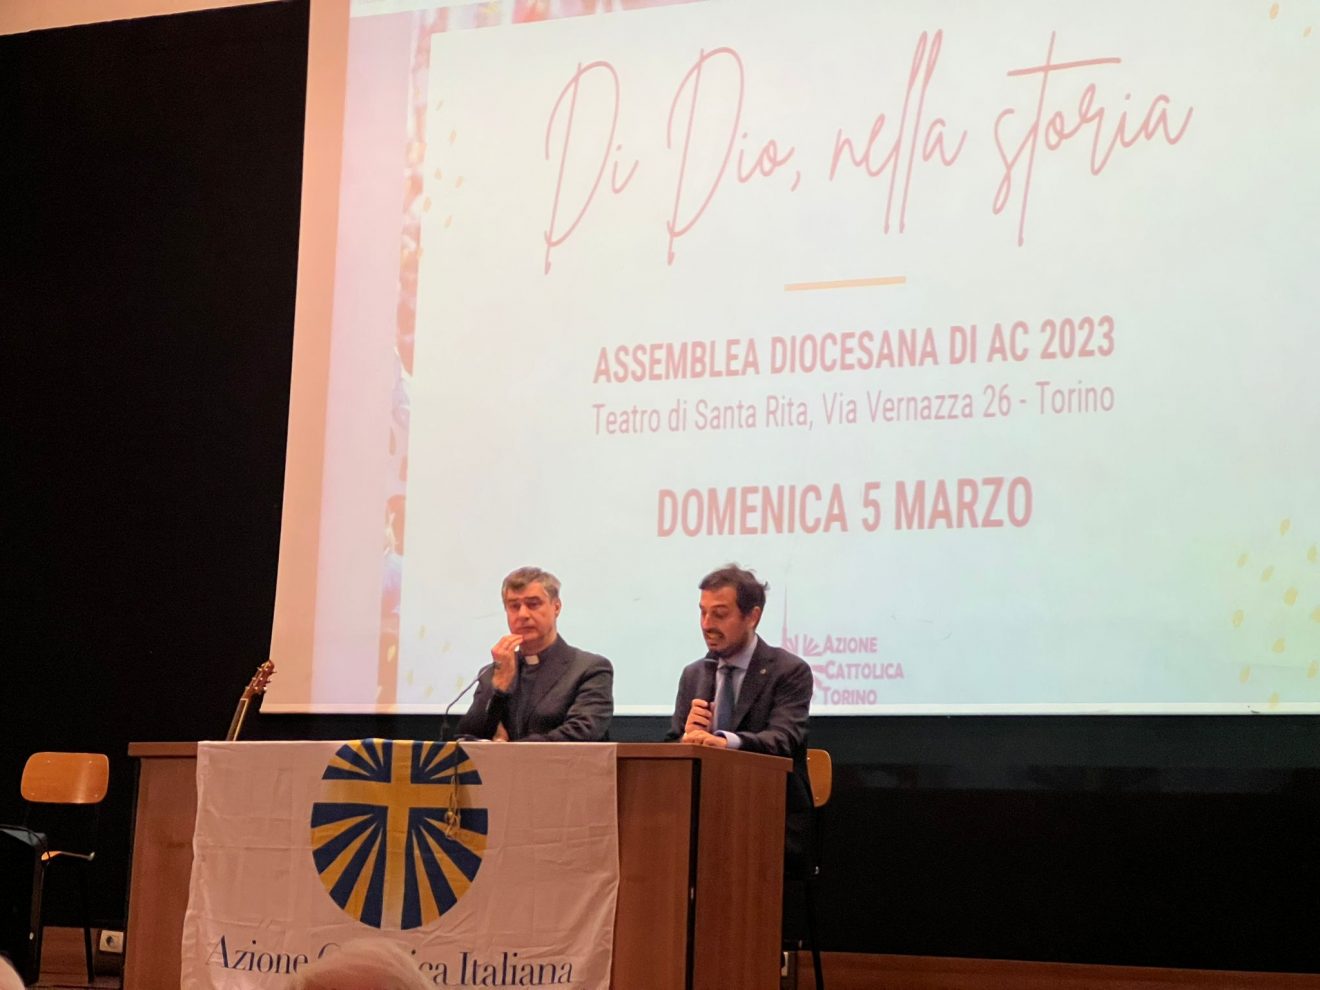 Assemblea diocesana annuale dell’Azione Cattolica – Torino con mons Repole, 5 marzo 2023